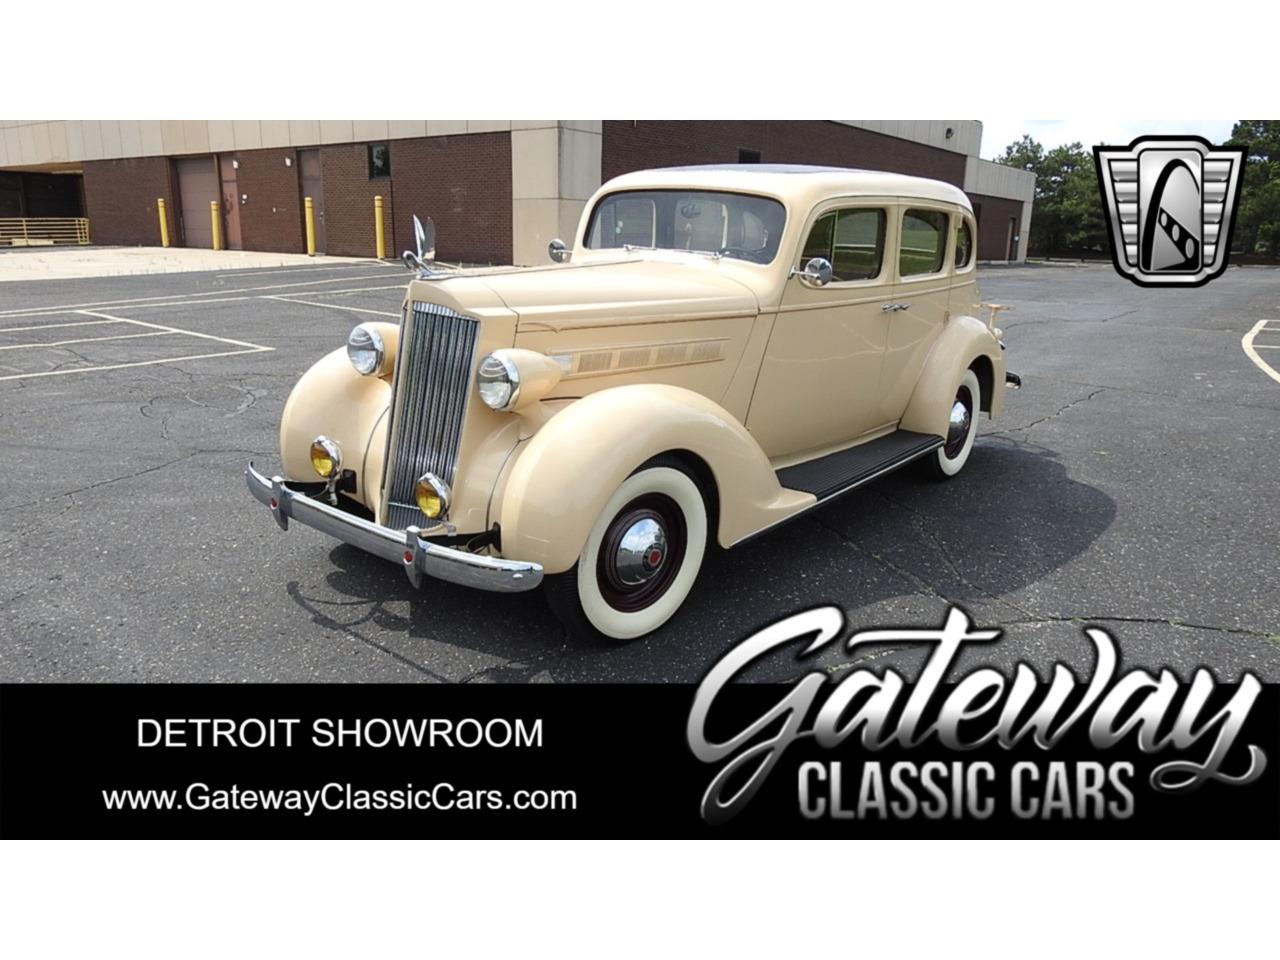 For Sale: 1937 Packard 115 in O'Fallon, Illinois for sale in O Fallon, IL